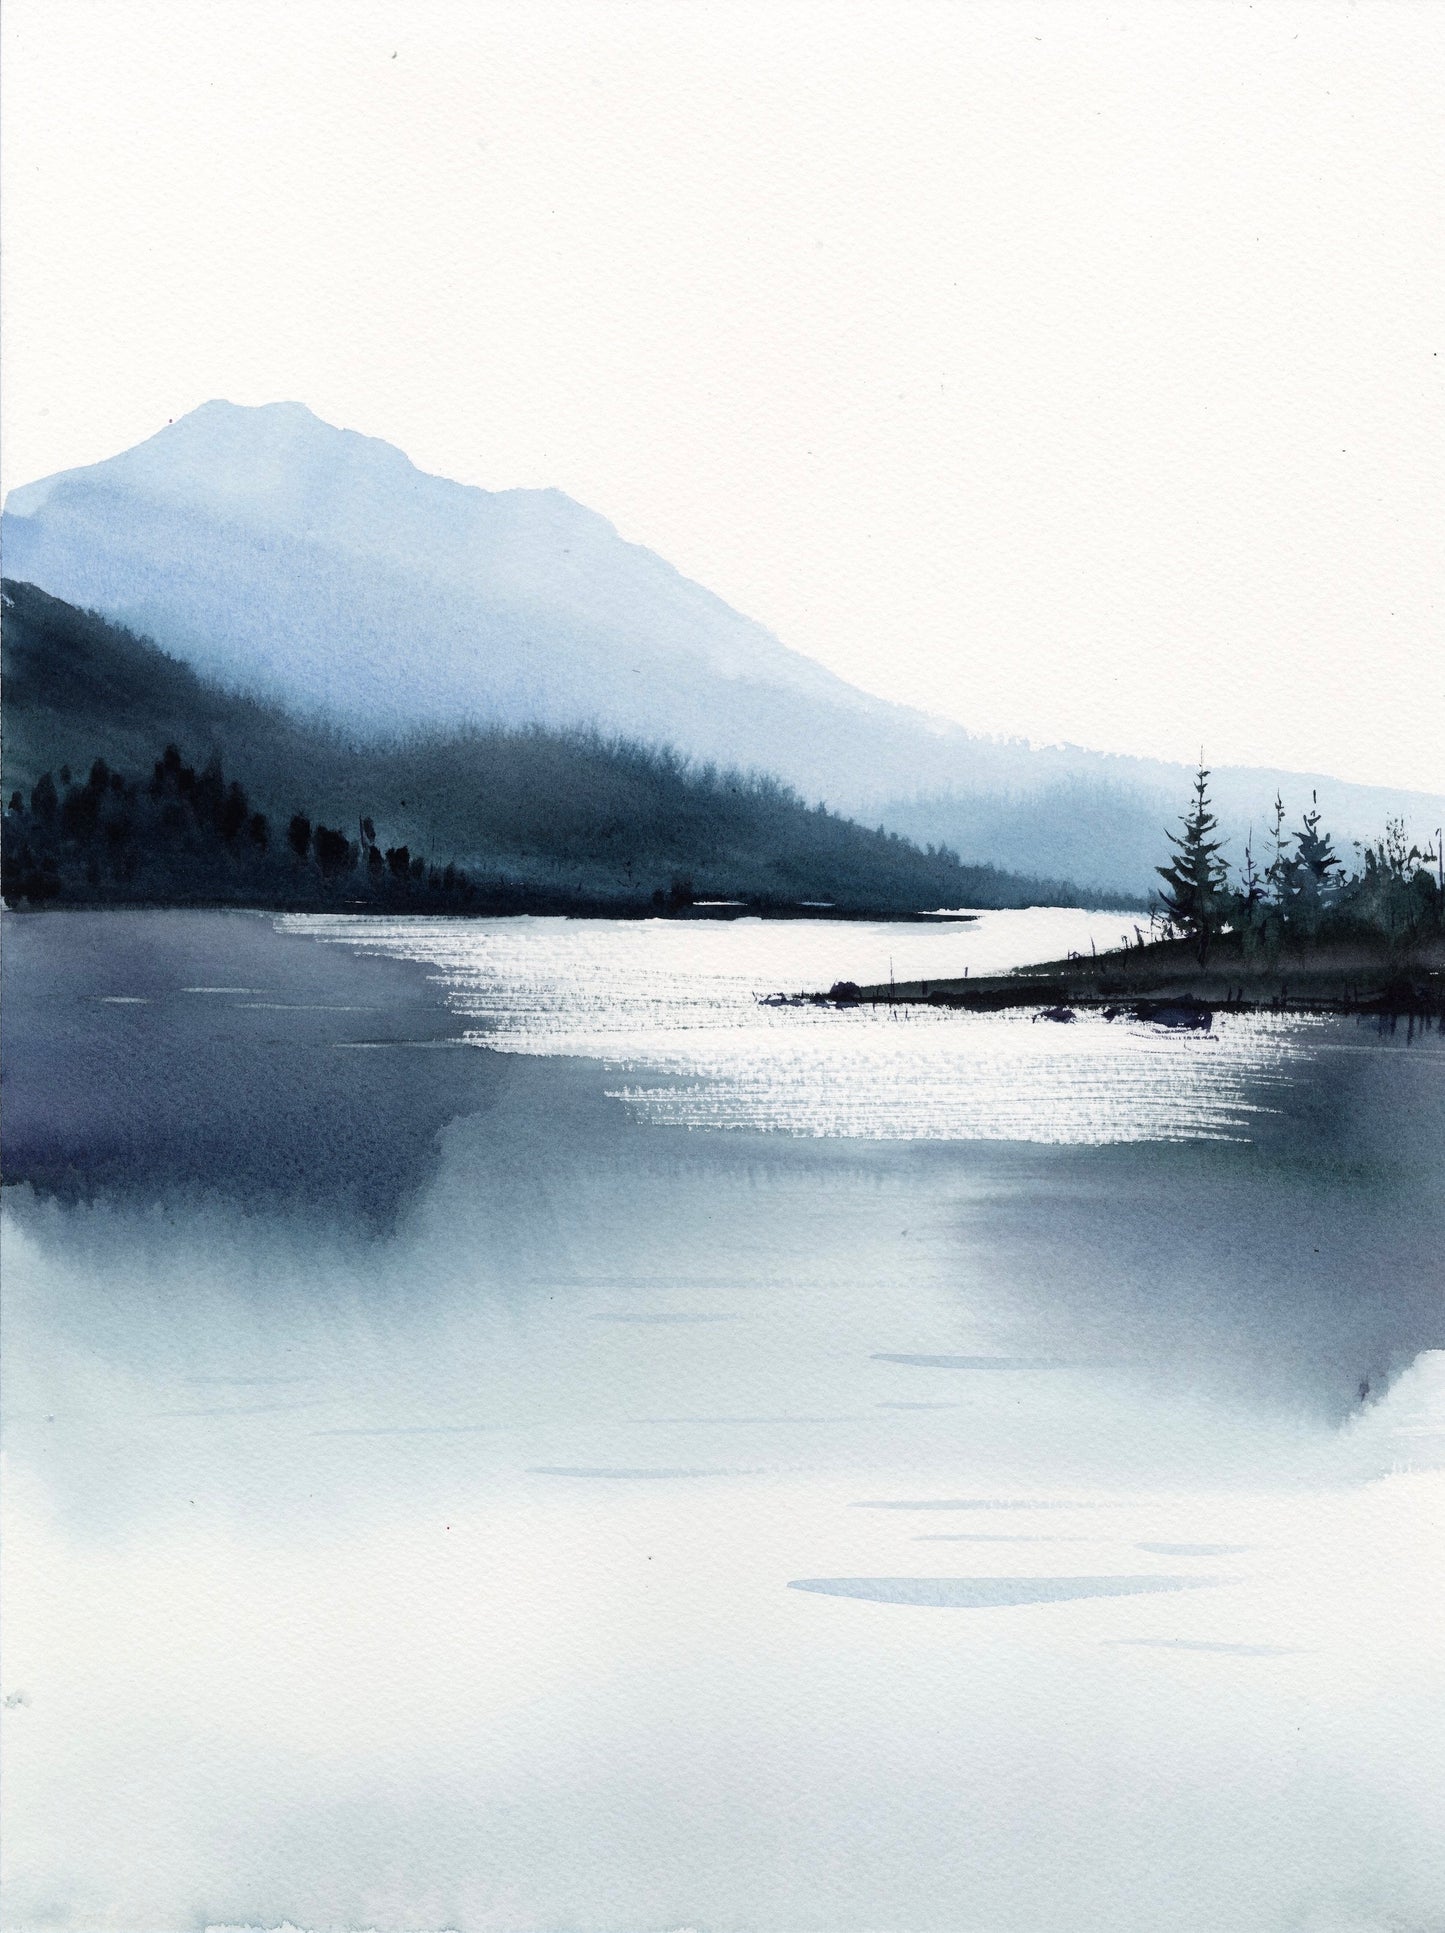 Monochrome Landscape #1 - Original watercolor painting